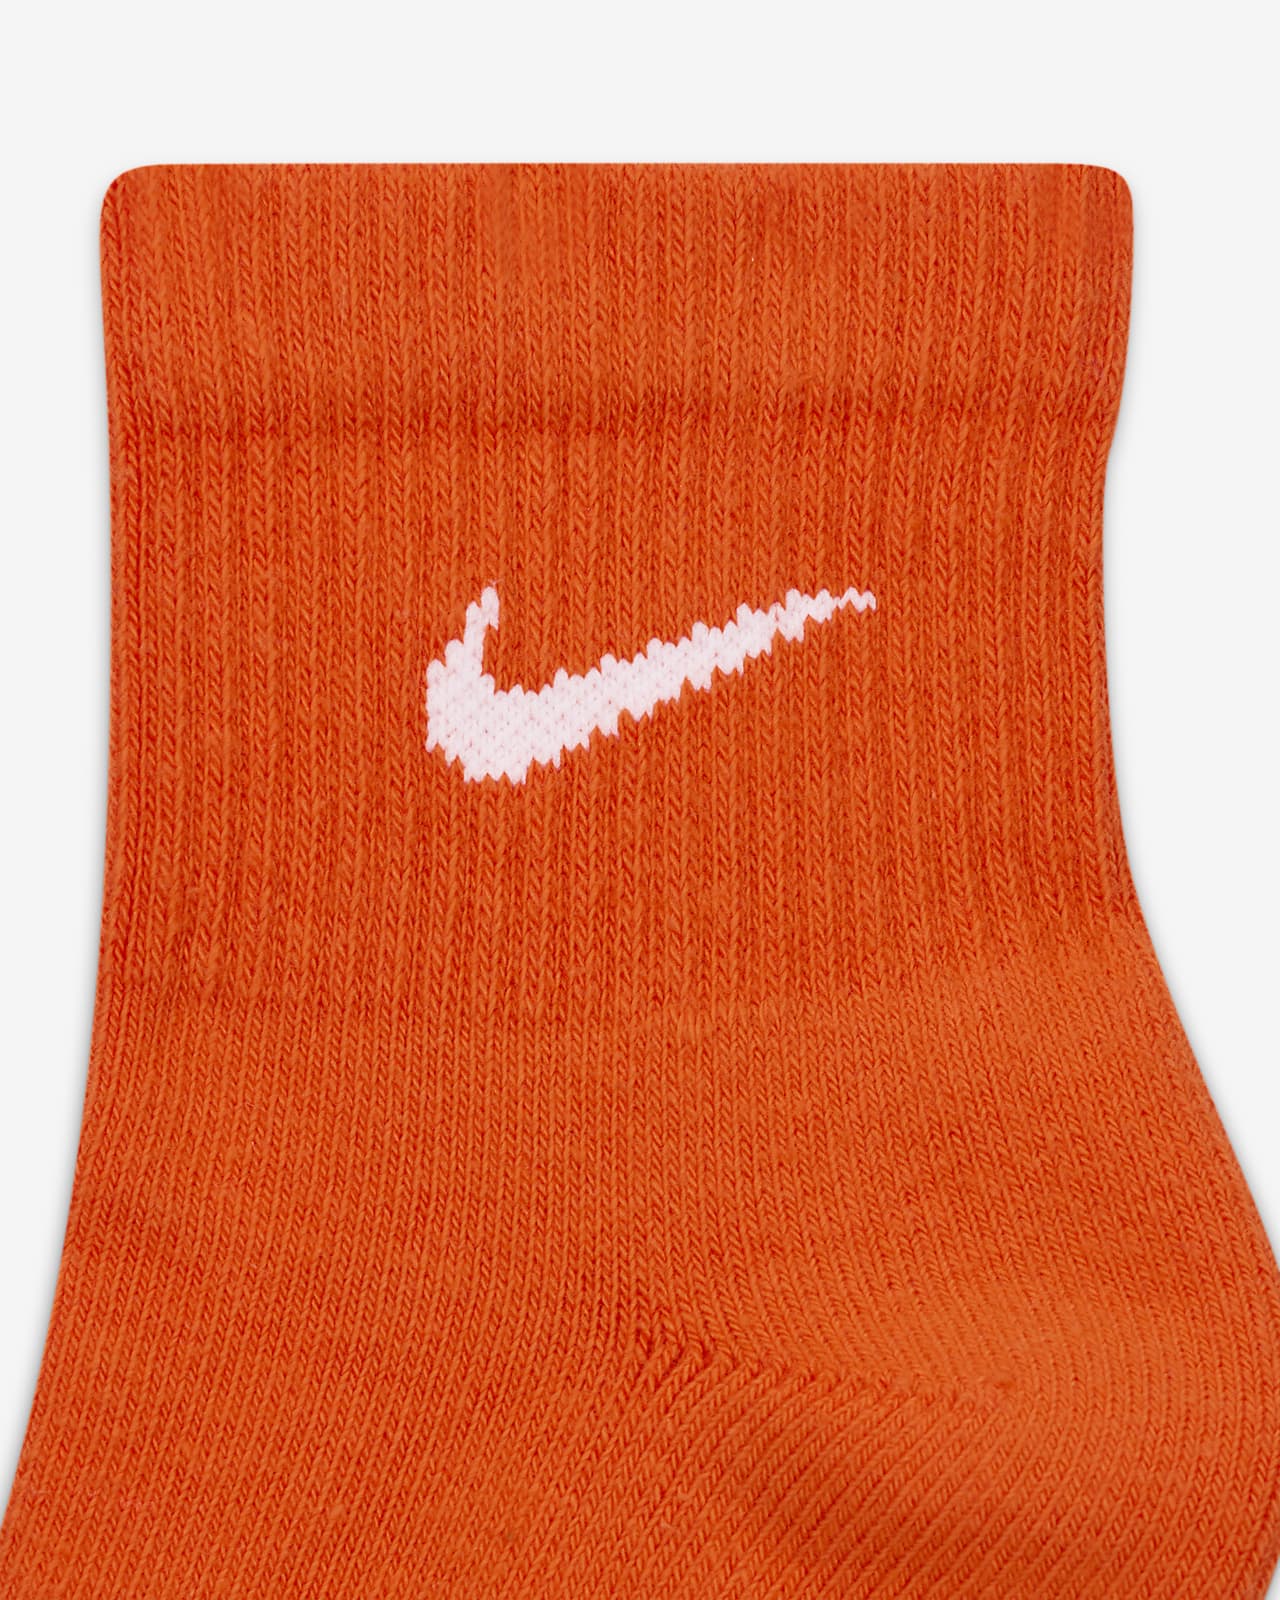 Naranja Calcetines. Nike US